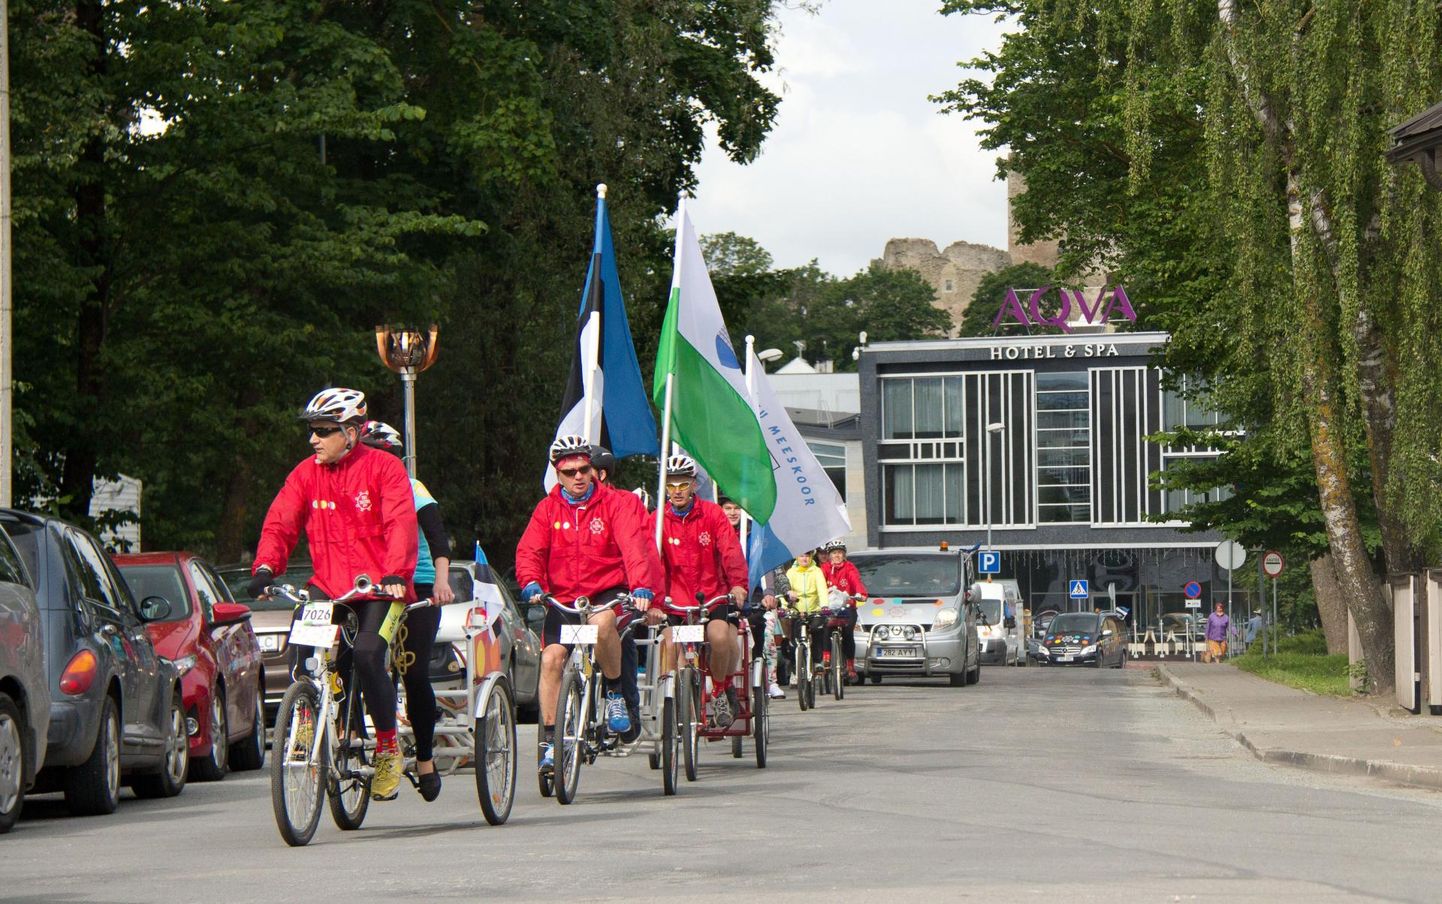 Kui viie aasta eest jõudis laulupeotuli Rakvere kesklinna jalgratturite abiga, siis tänavu läbib tuletõrvik linna jooksjate kätes.